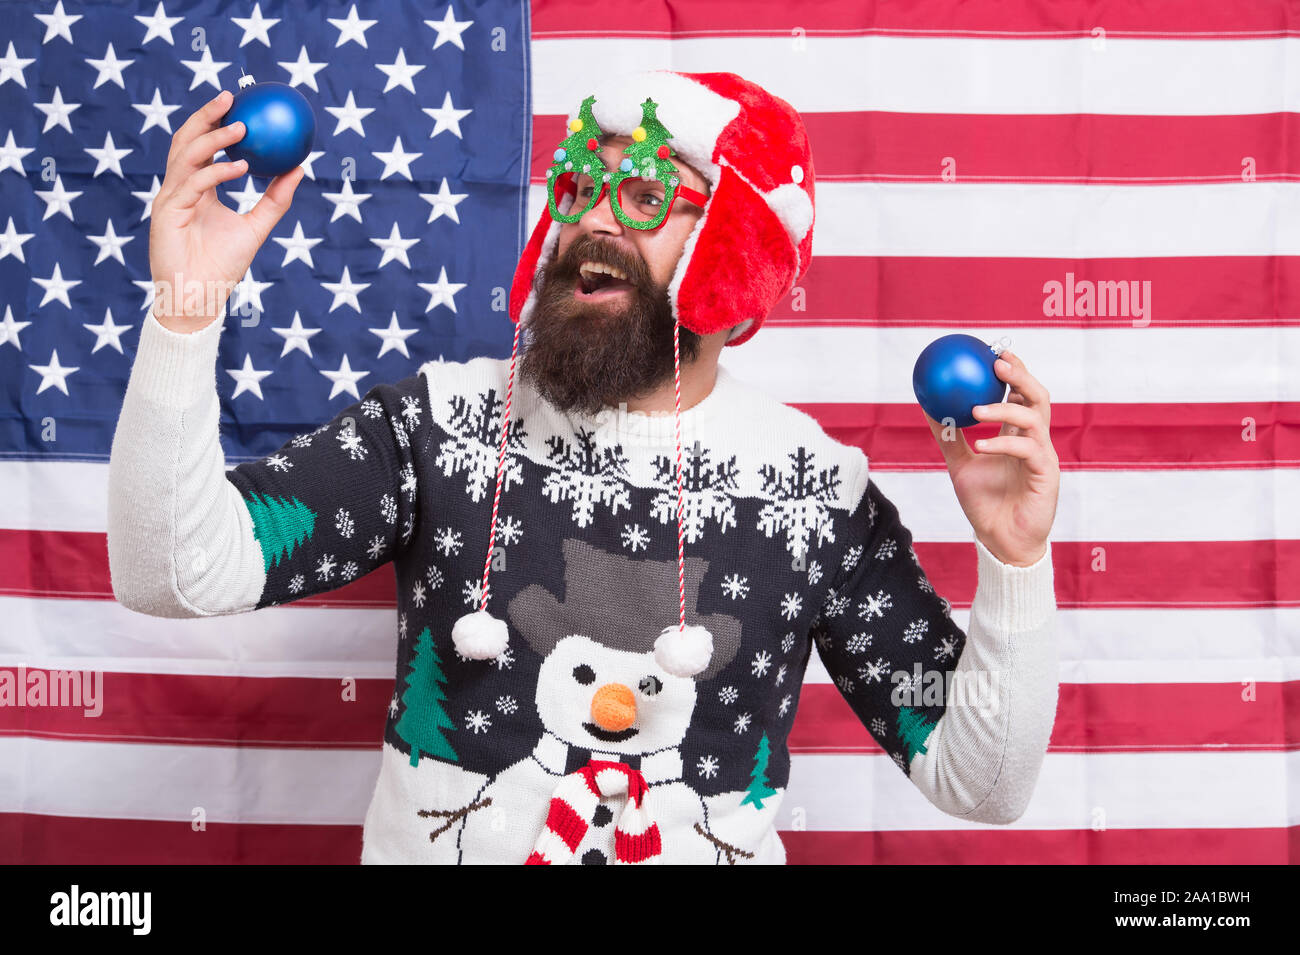 Gott Amerika segnen. Patriotische santa feiern Winterurlaub. Weihnachten Lampen mit amerikanischer Flagge. Nationale Feiertage. Frohe Feiertage. Die Feiertage und ihrem Patriotismus feiern. Stockfoto